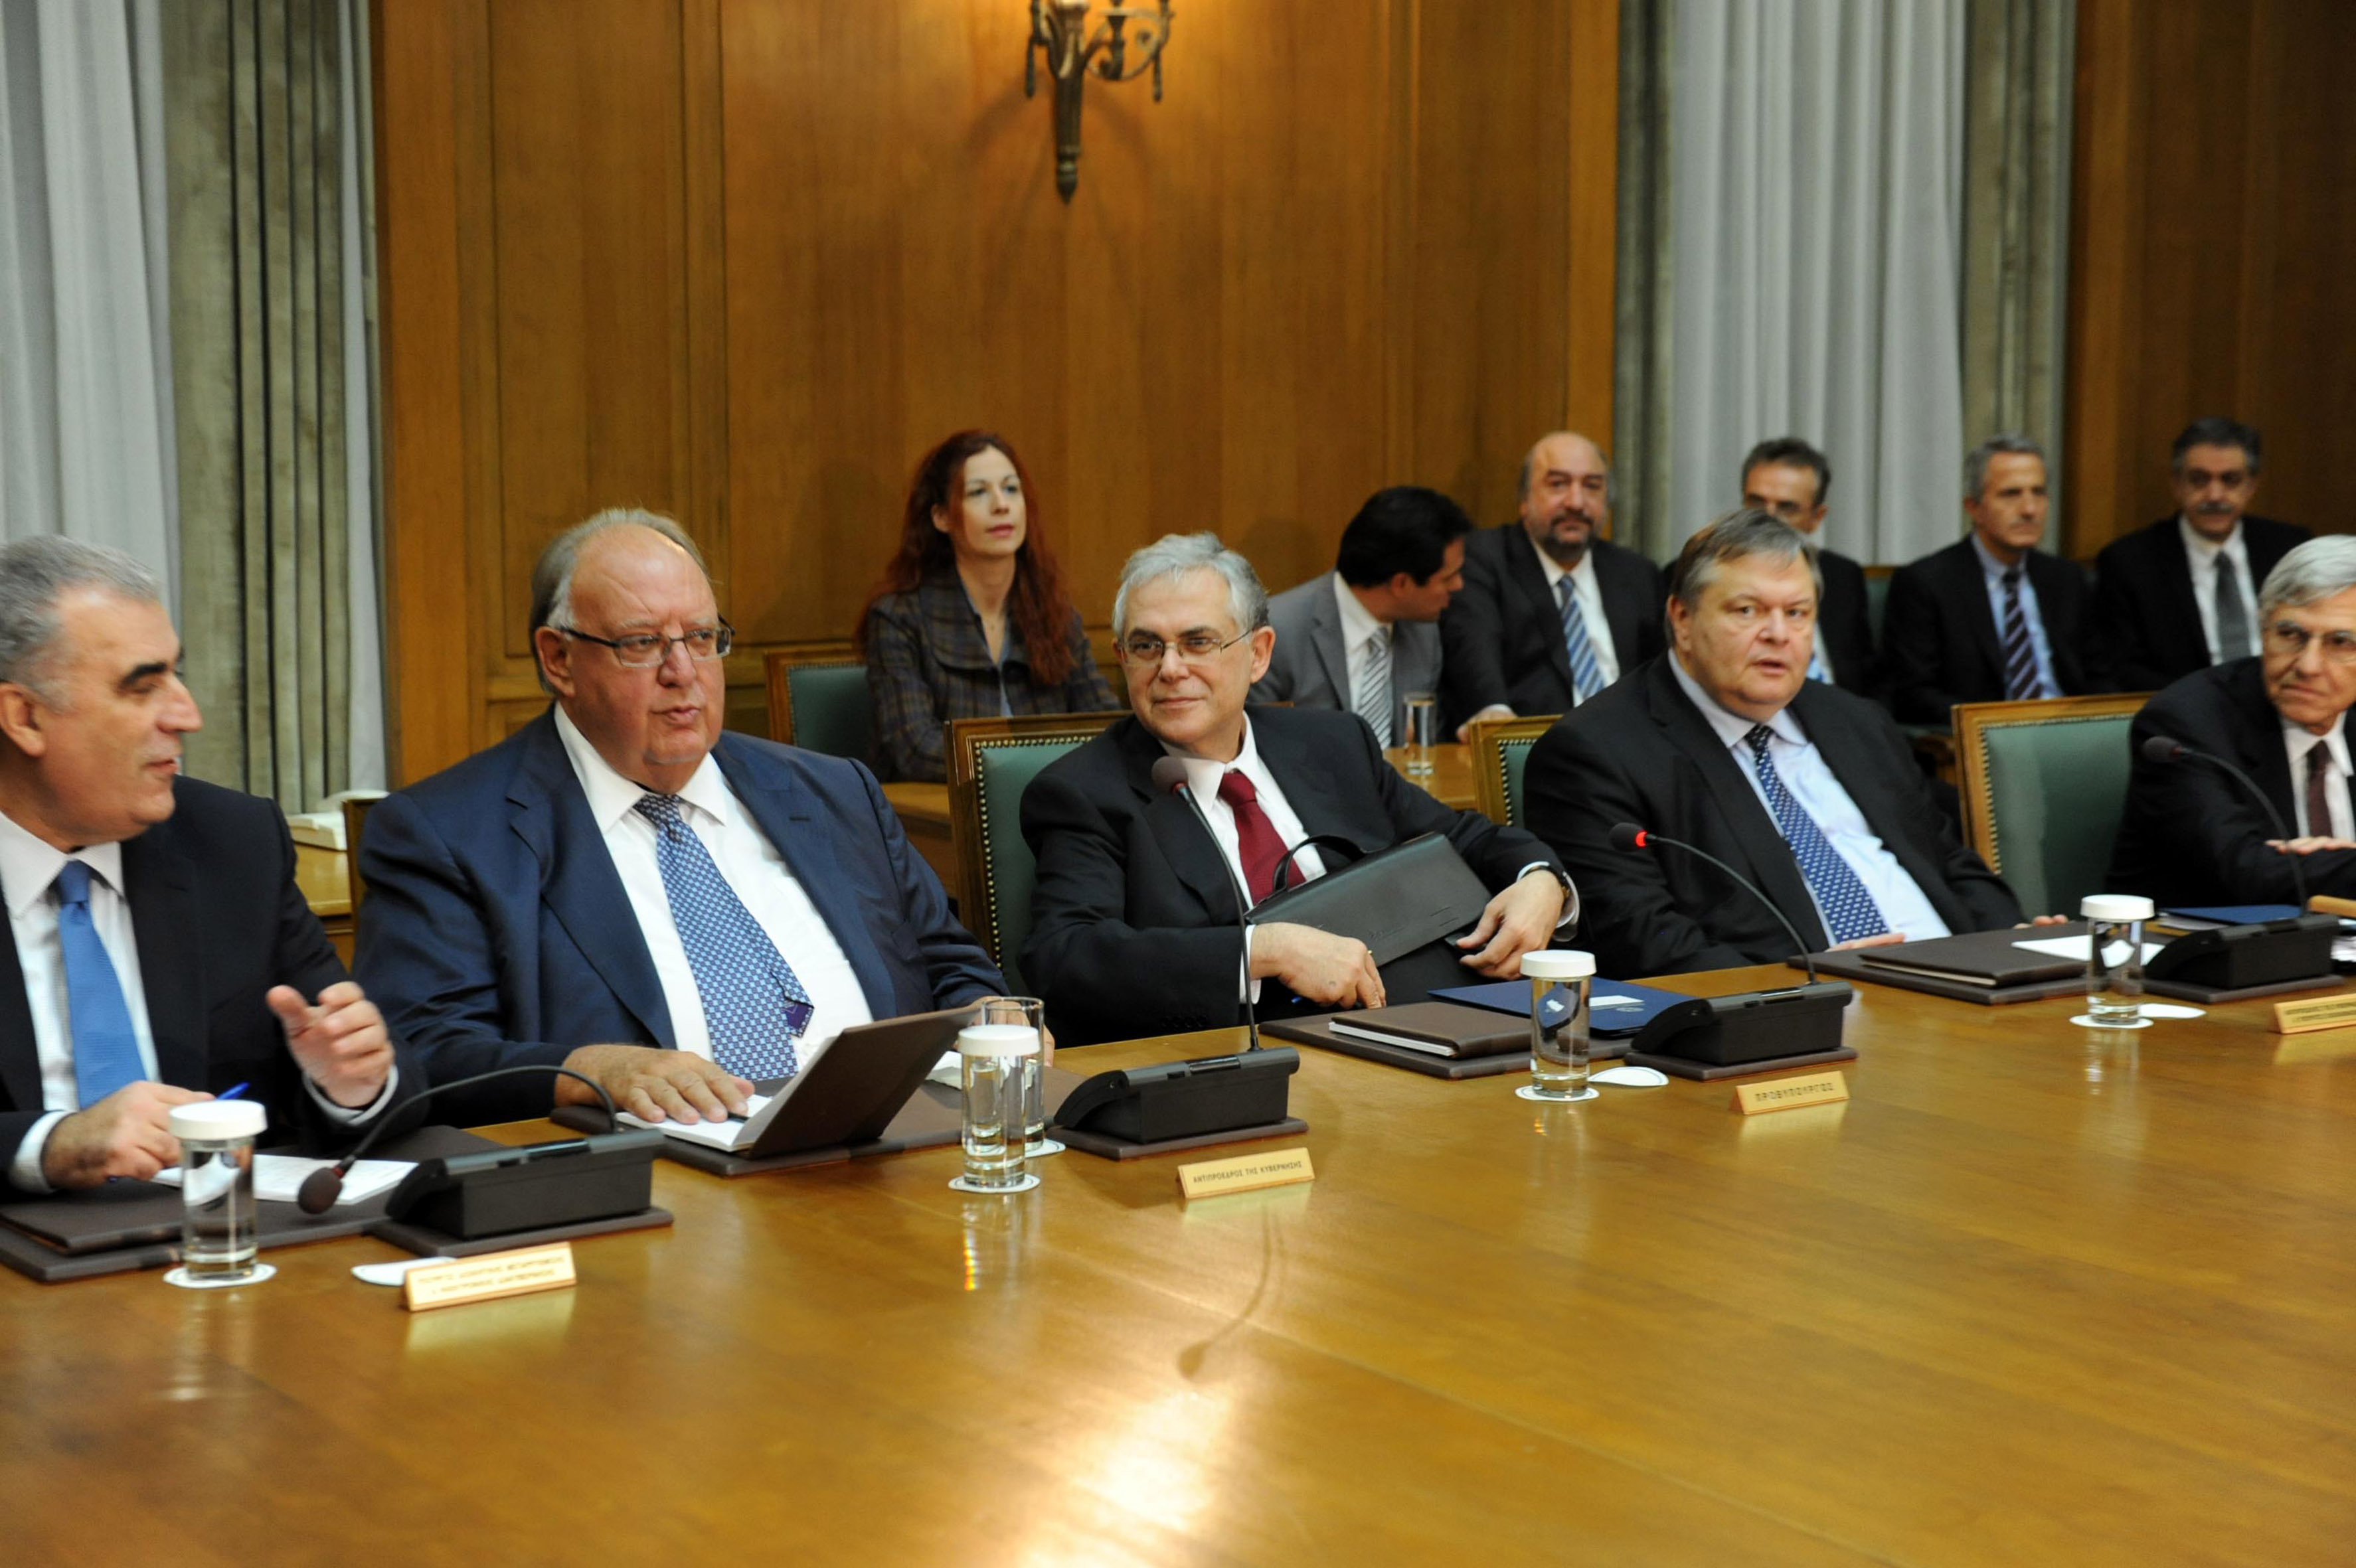 Λ. Παπαδήμος: Το έργο και οι στόχοι της κυβέρνησης συνεργασίας